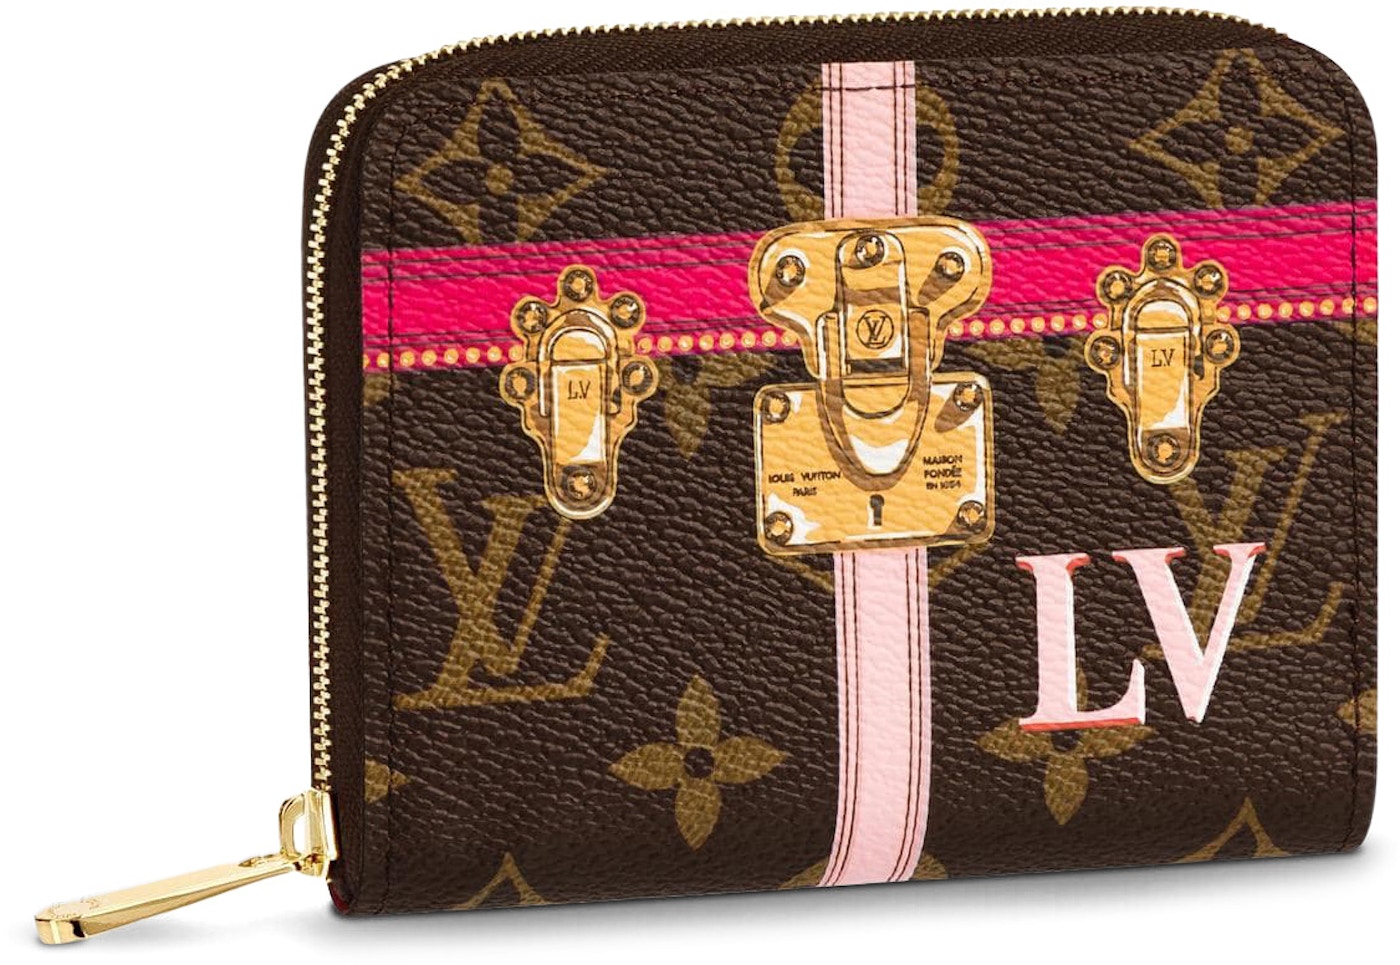 Shop Louis Vuitton ZIPPY COIN PURSE Zippy coin purse (M60574) by